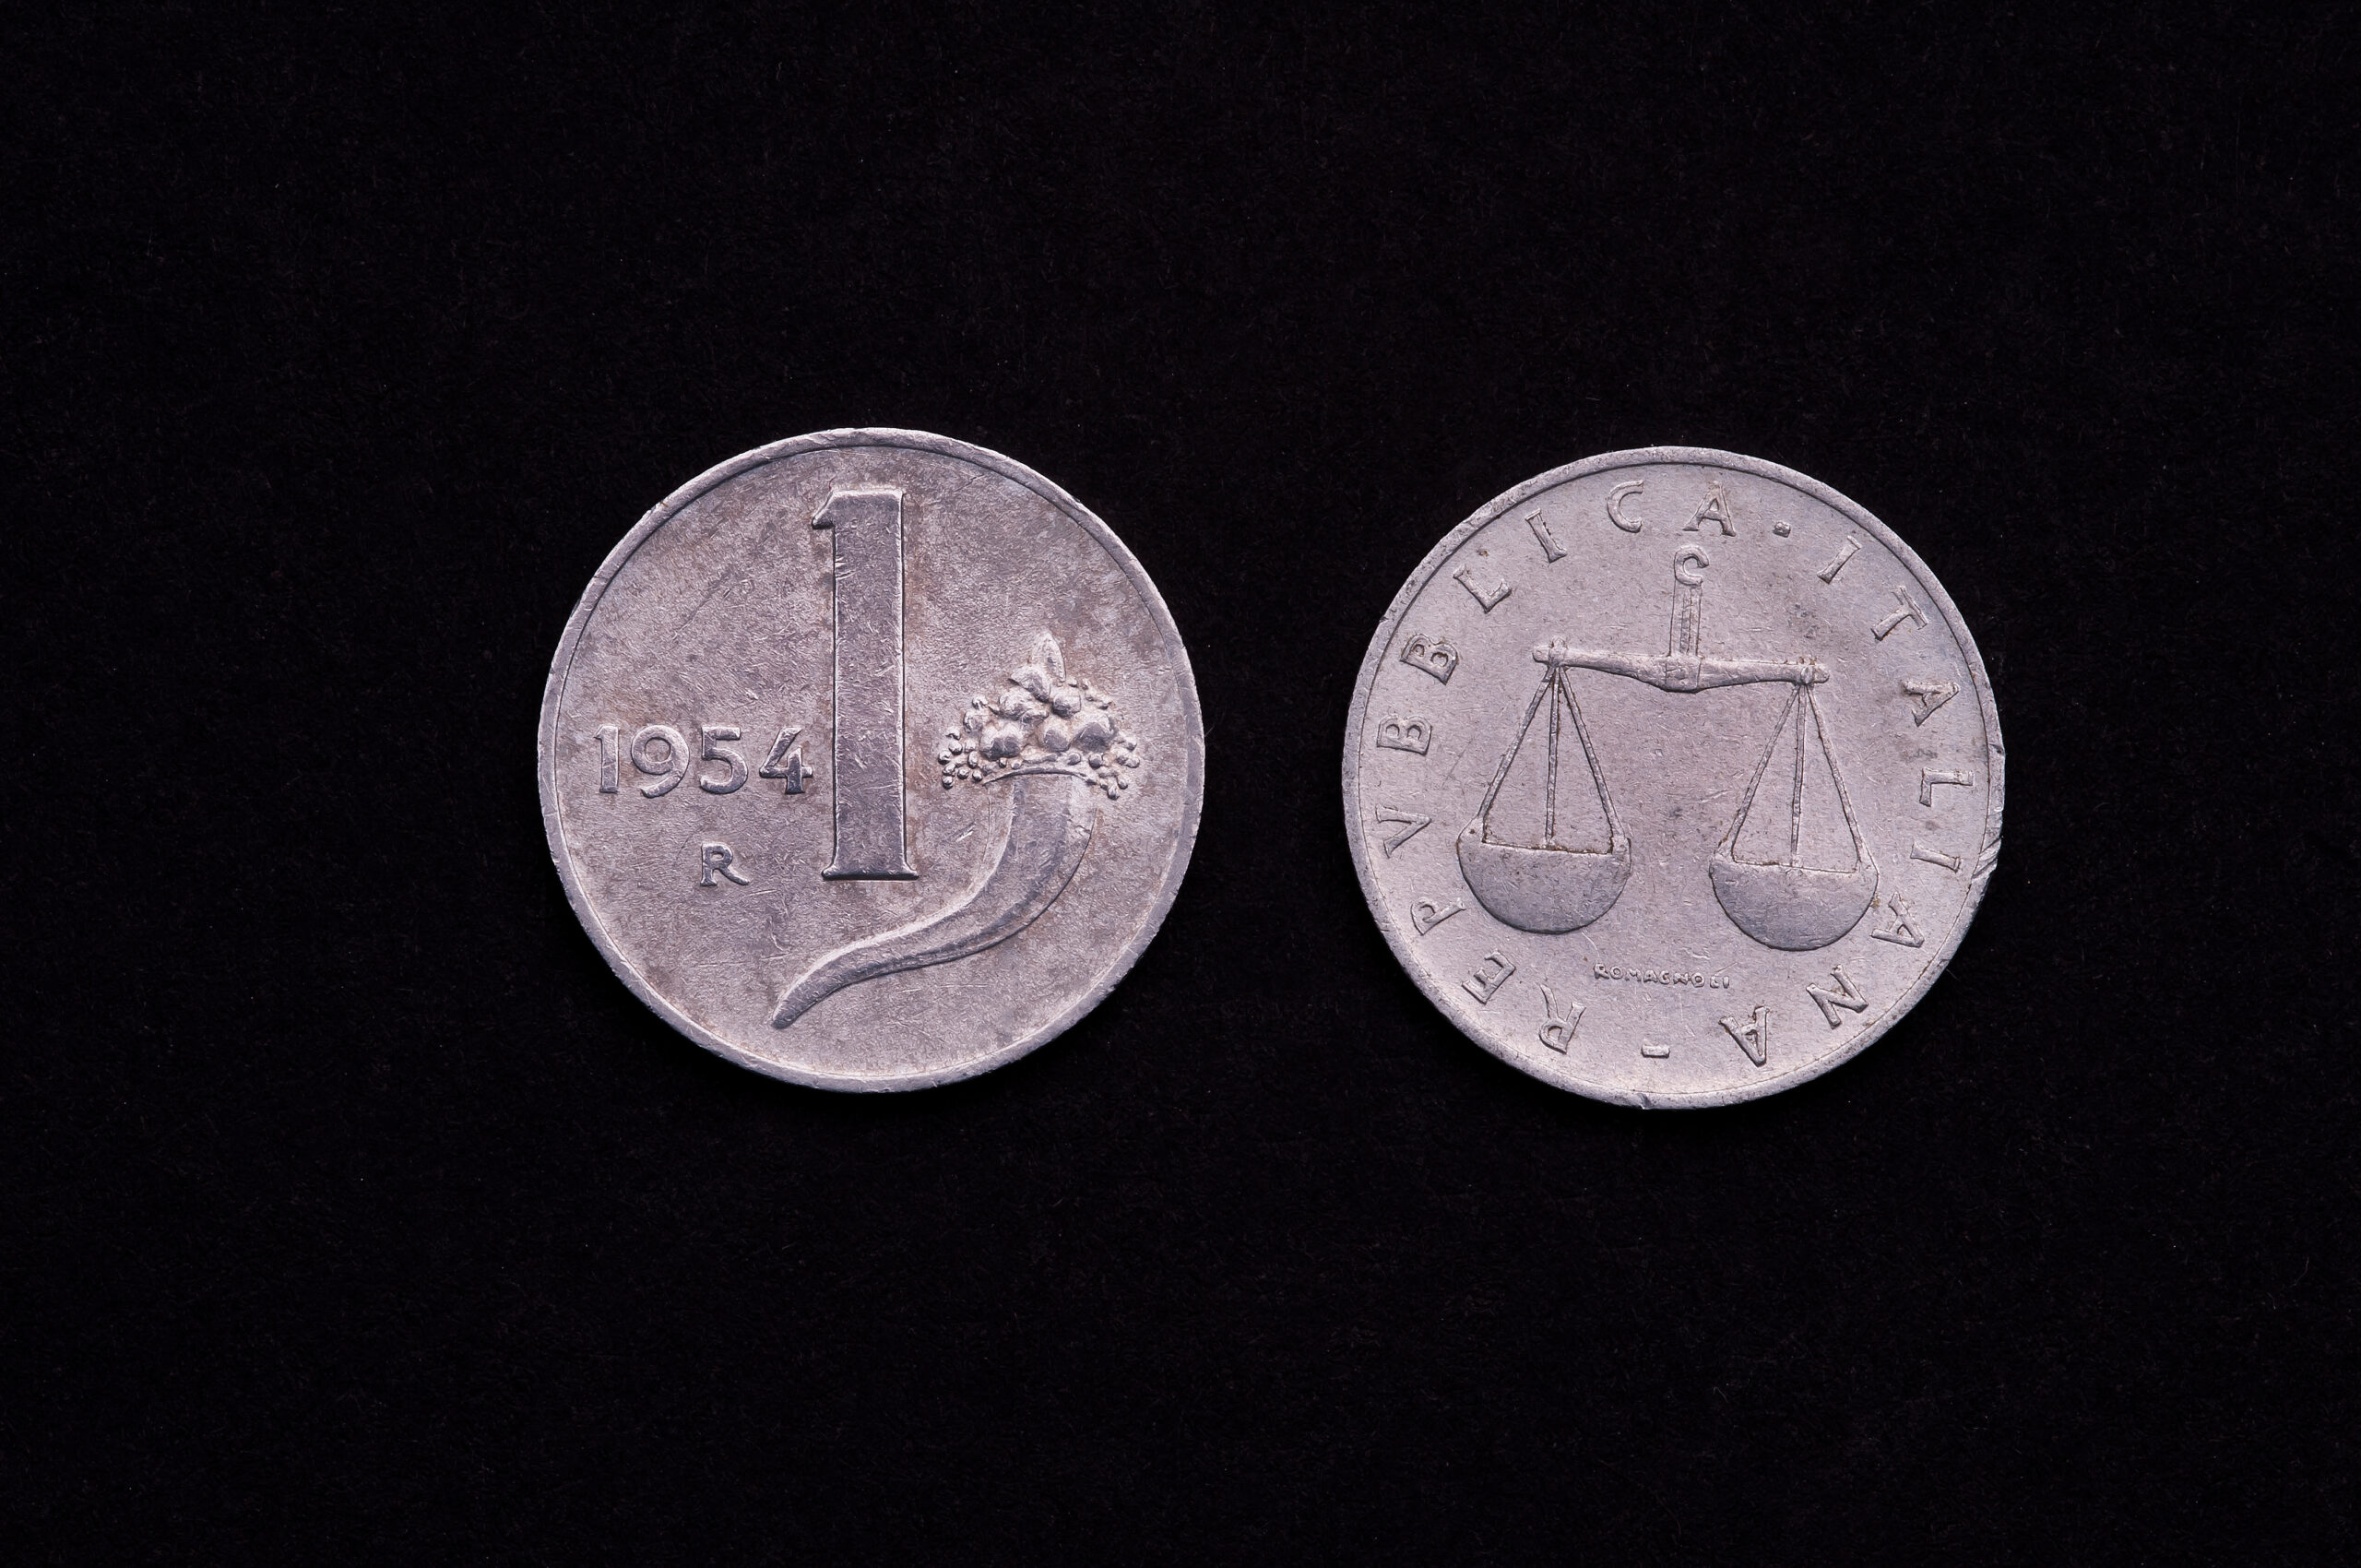 Hai ancore monete da 1 lira? Incredibile il valore di questi esemplari